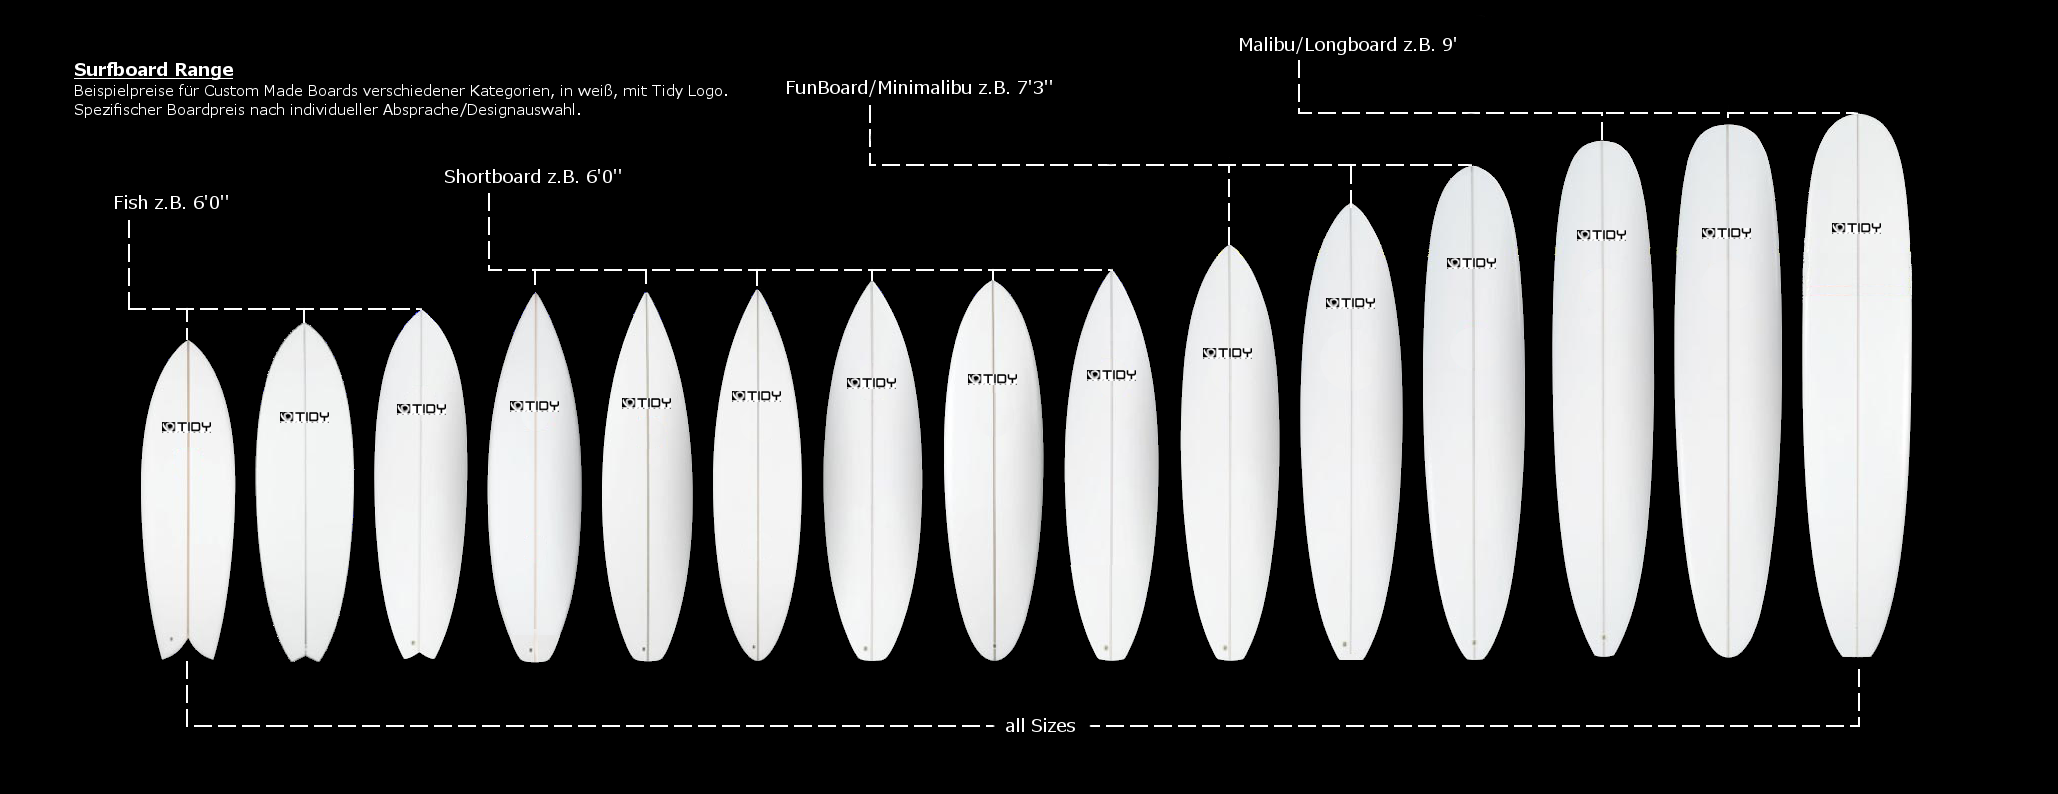 Surfboards-Übersicht-mit-Logo-und-Beschriftung ohne Preise